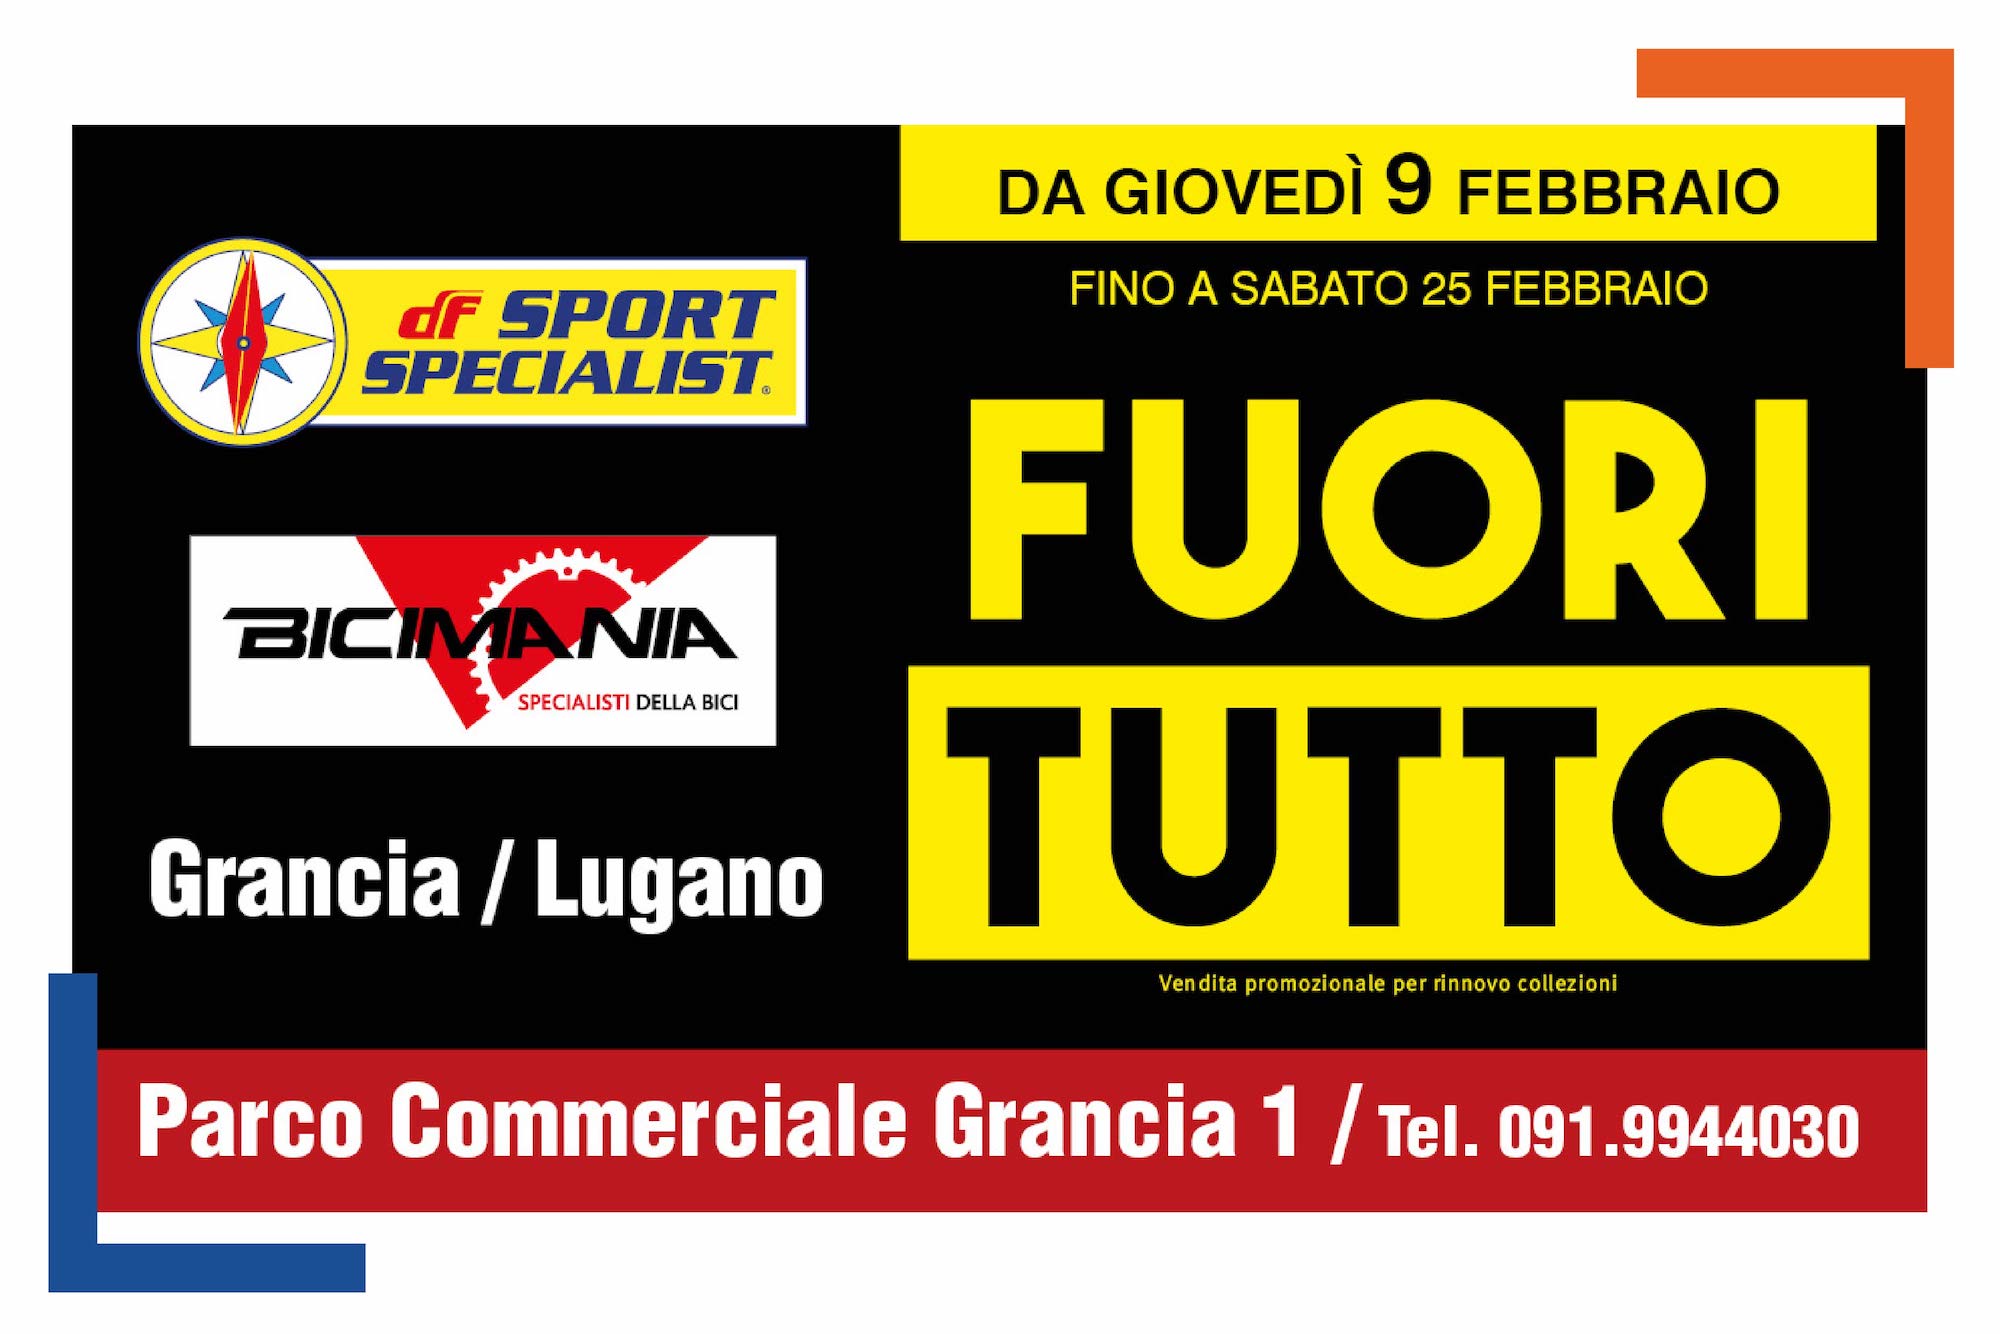 Da DF sport Specialist/Bicimania al Parco Commerciale GRANCIA 1 di Lugano è iniziato il FUORITUTTO! Approfitta dei prezzi esclusivi su migliaia di articoli! promozione valida fino al 25 febbraio!